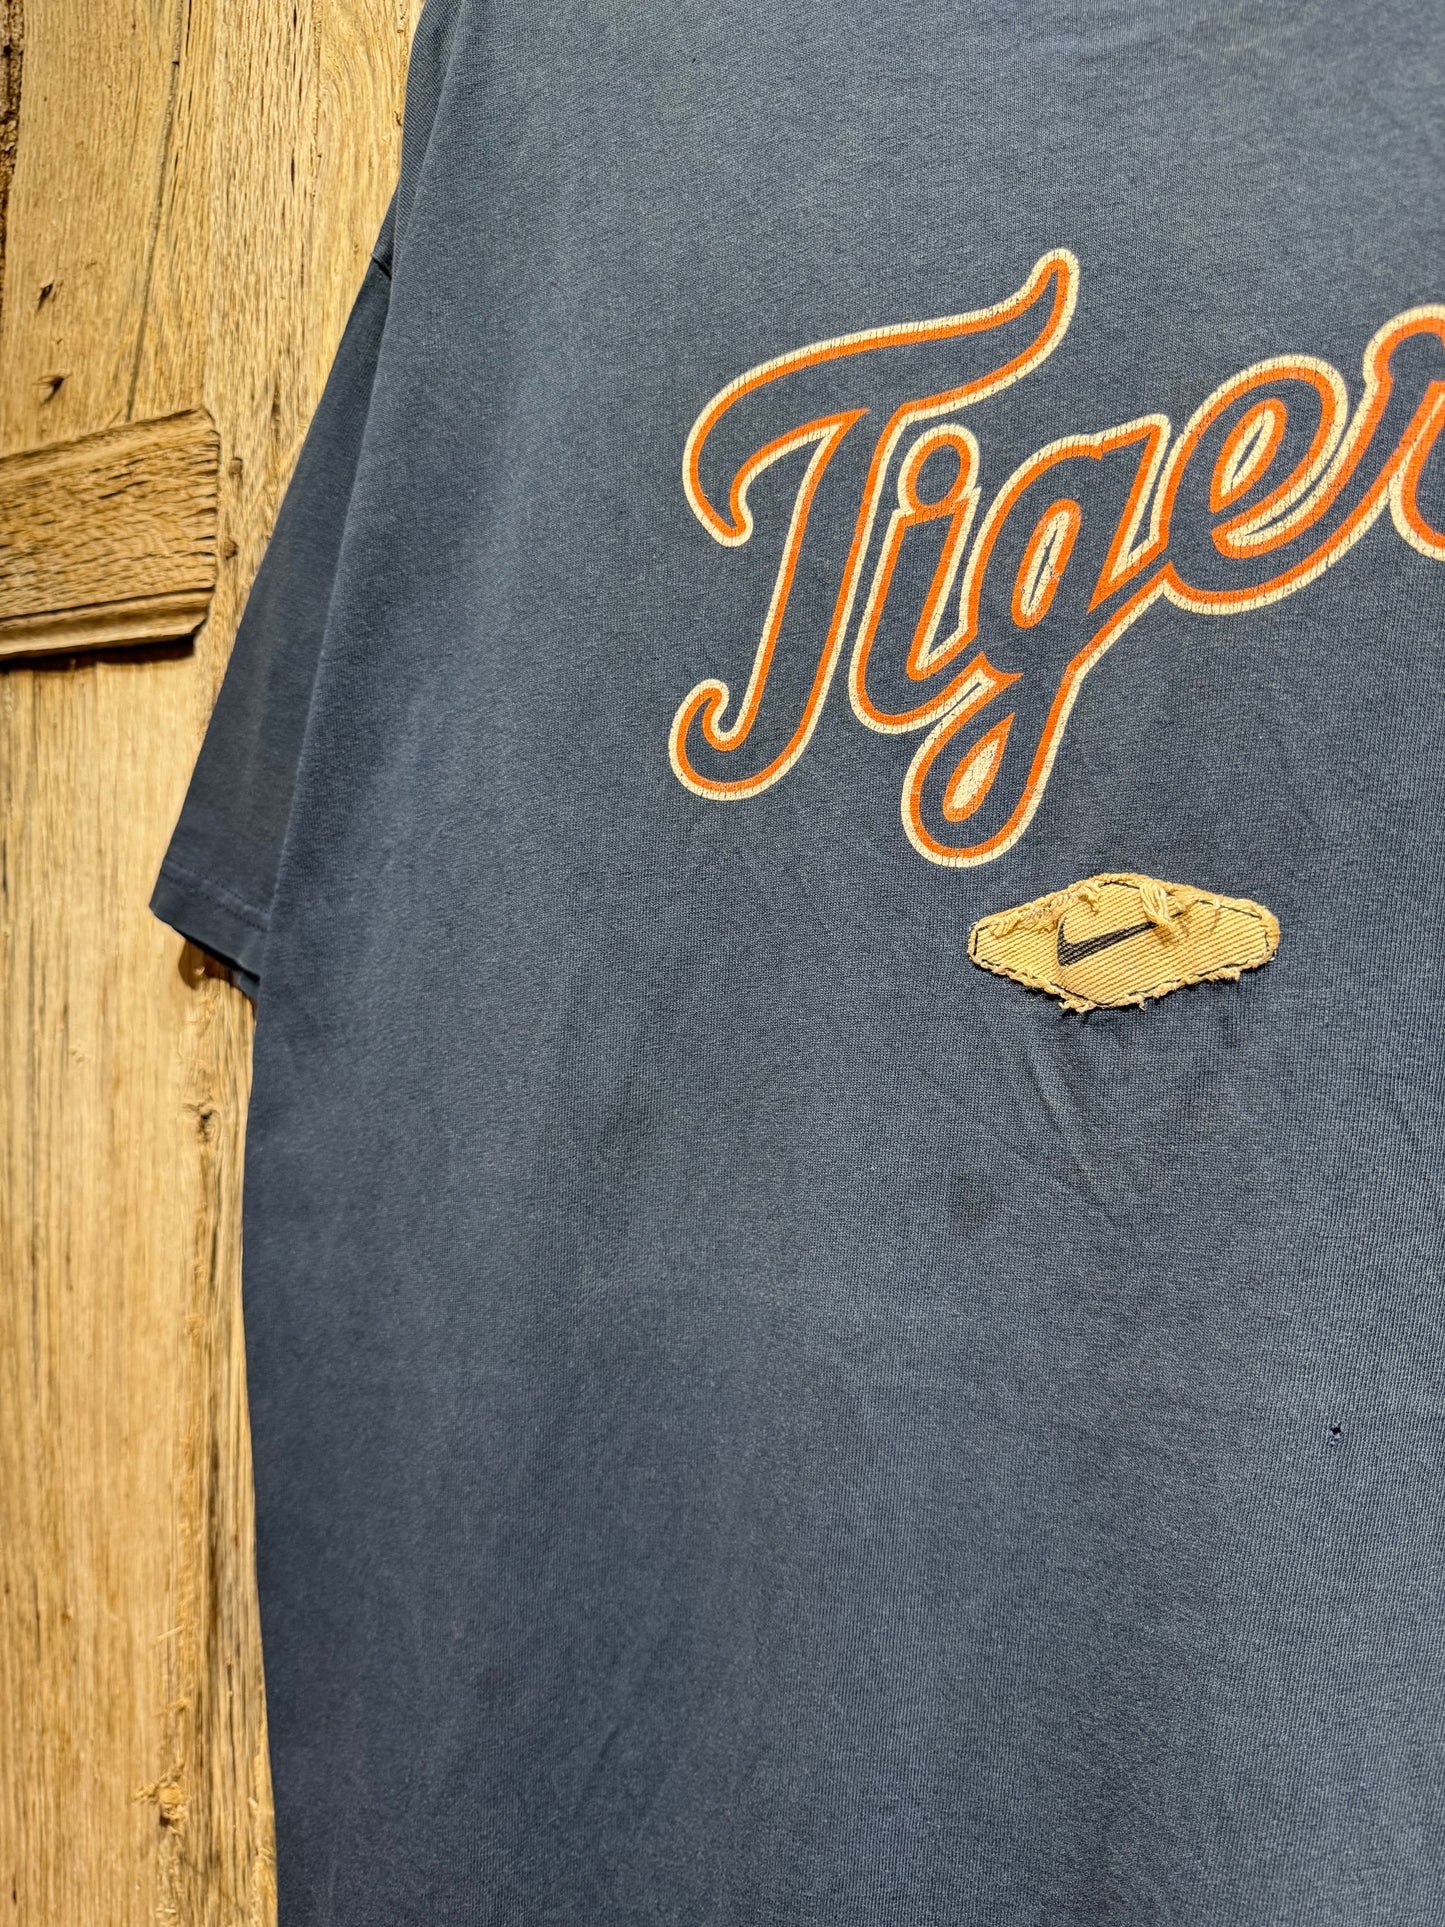 Vintage Nike Detroit Tigers Baseball Tee